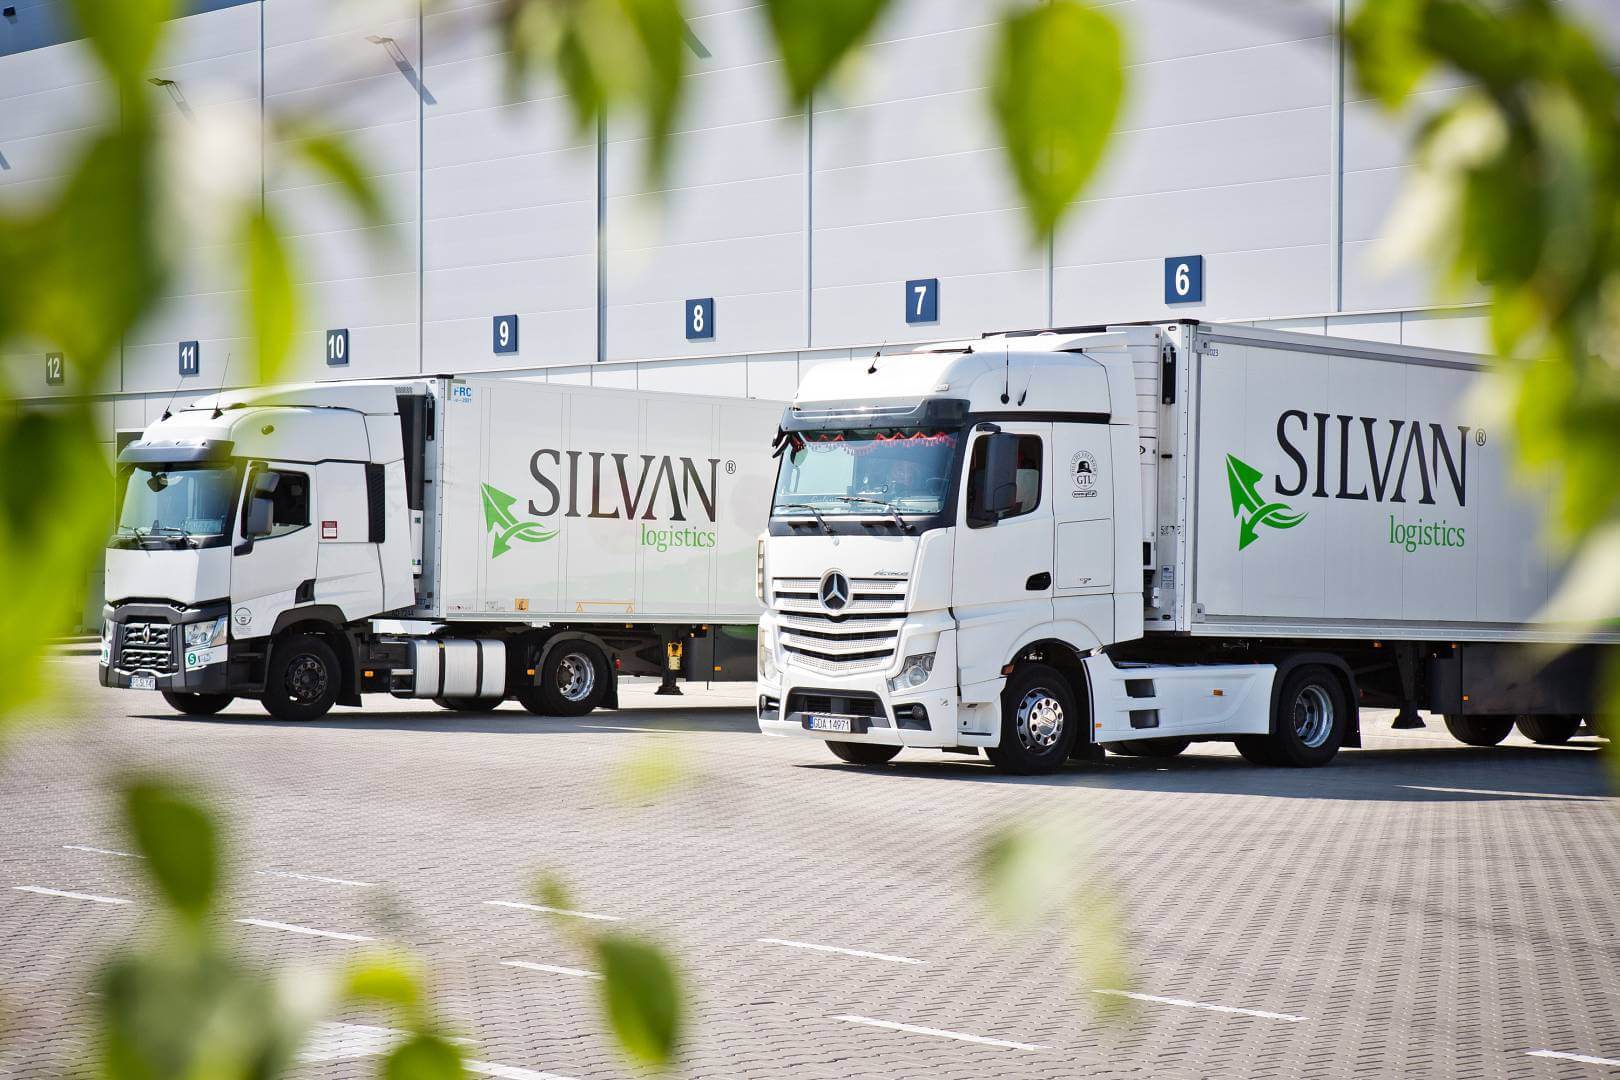 Firma spedycyjna dostawy Silvan Logistics